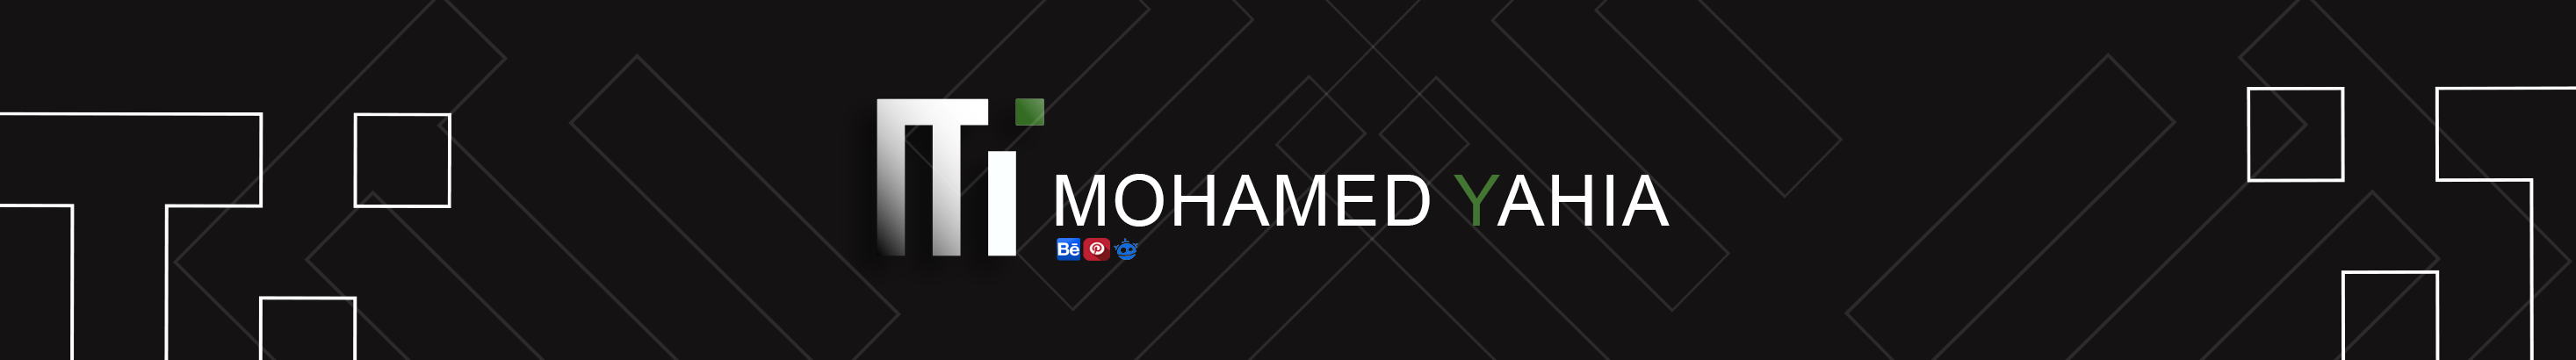 Mohamed Yahia's profile banner